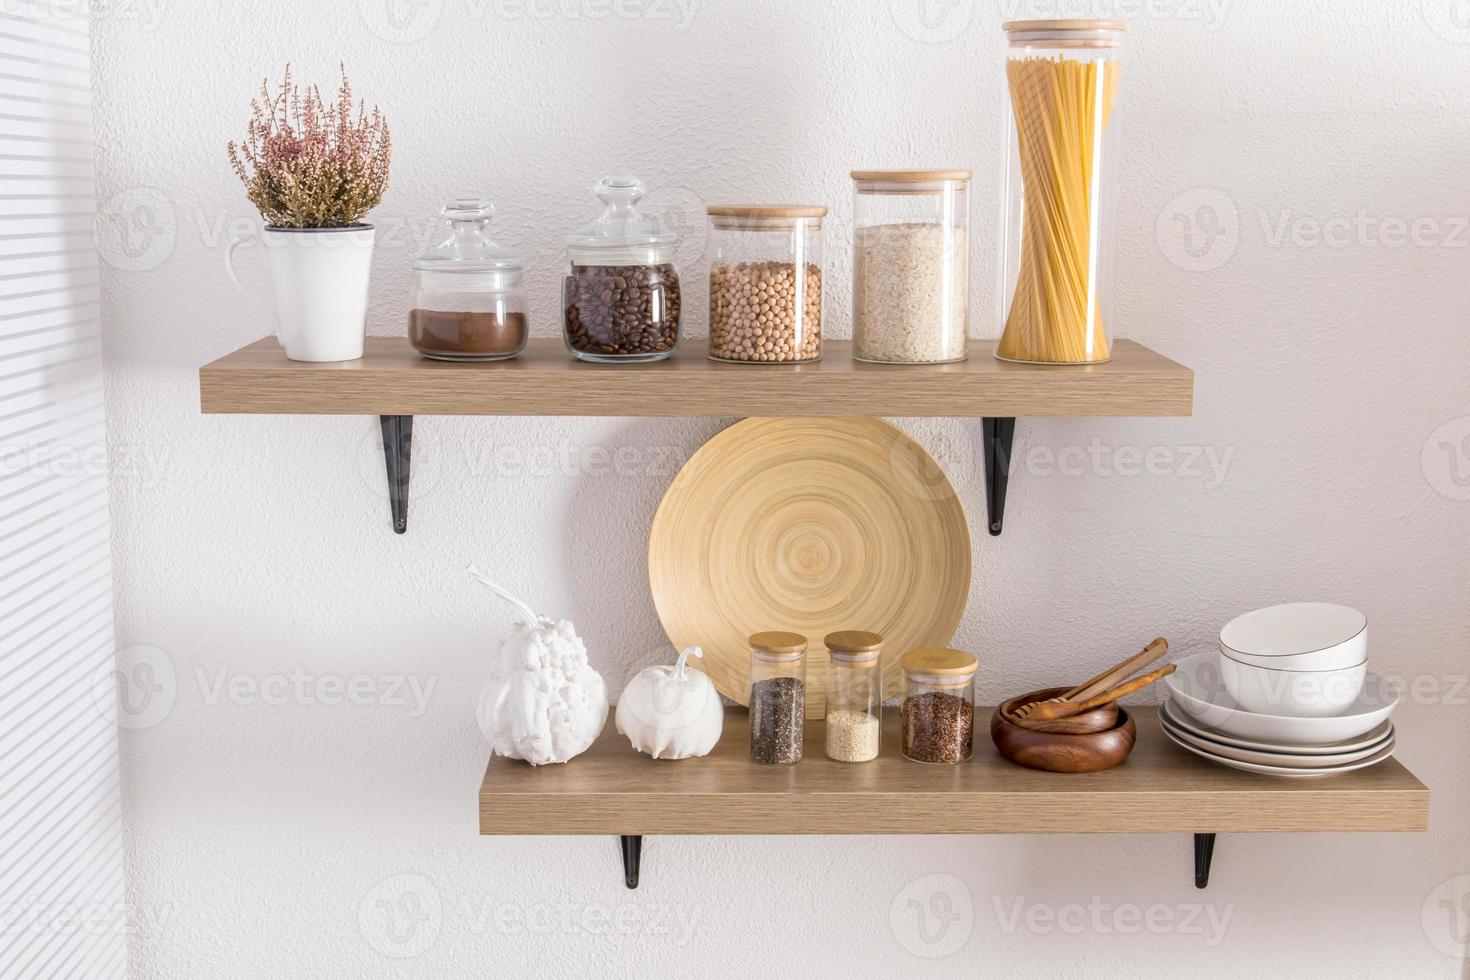 Open houten schappen met divers glas potten met een houten deksel gevulde met kruiden, koffie, spaghetti. elegant decor in de modern keuken. voorkant visie. foto